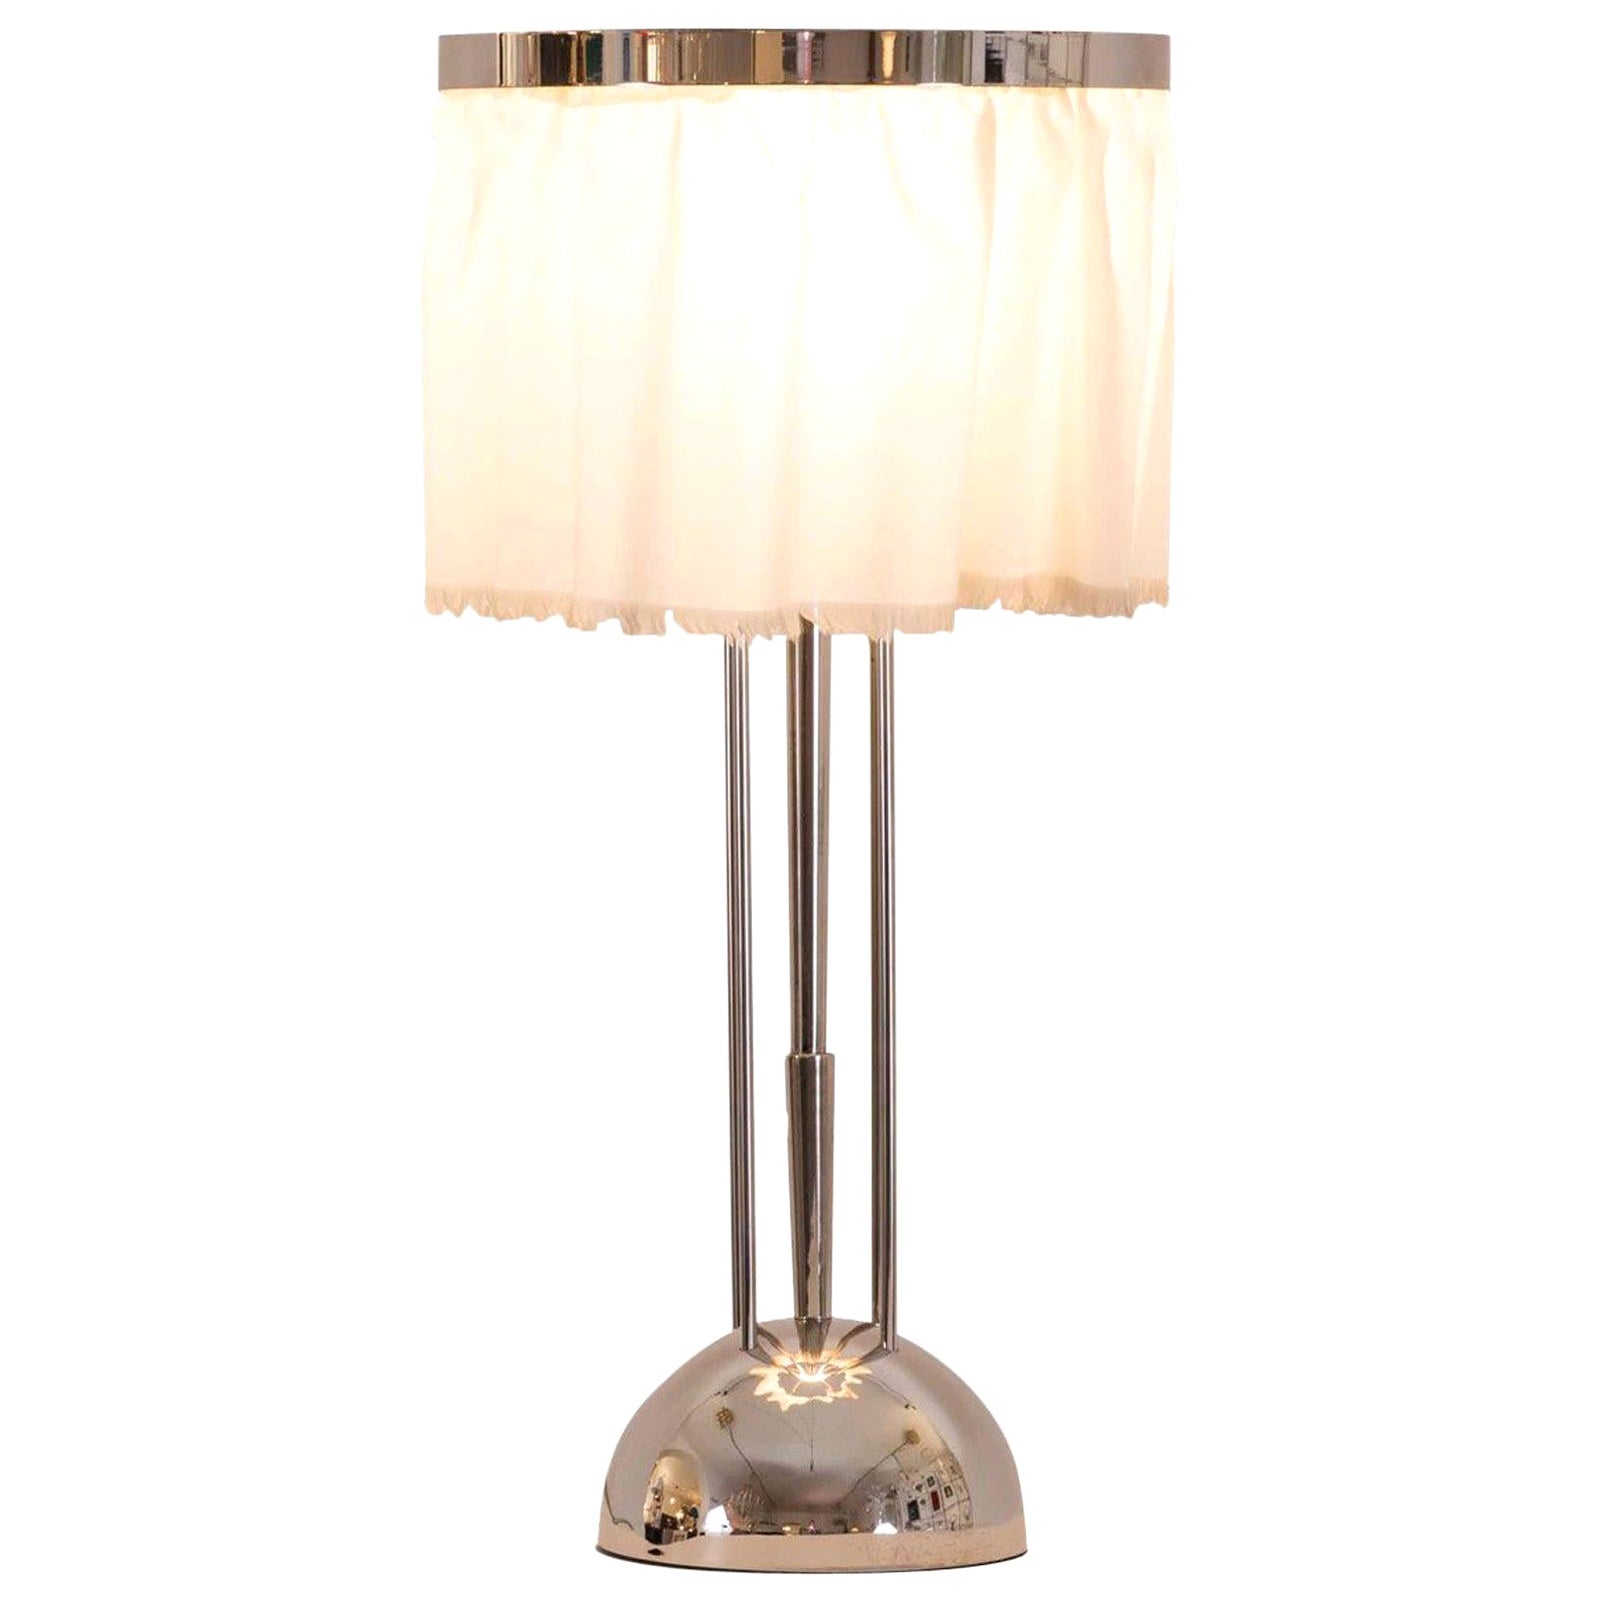 Josef Hoffmann&Wiener Werkstätte Wittgenstein Silk&Brass Table Lamp, Re-Edition For Sale